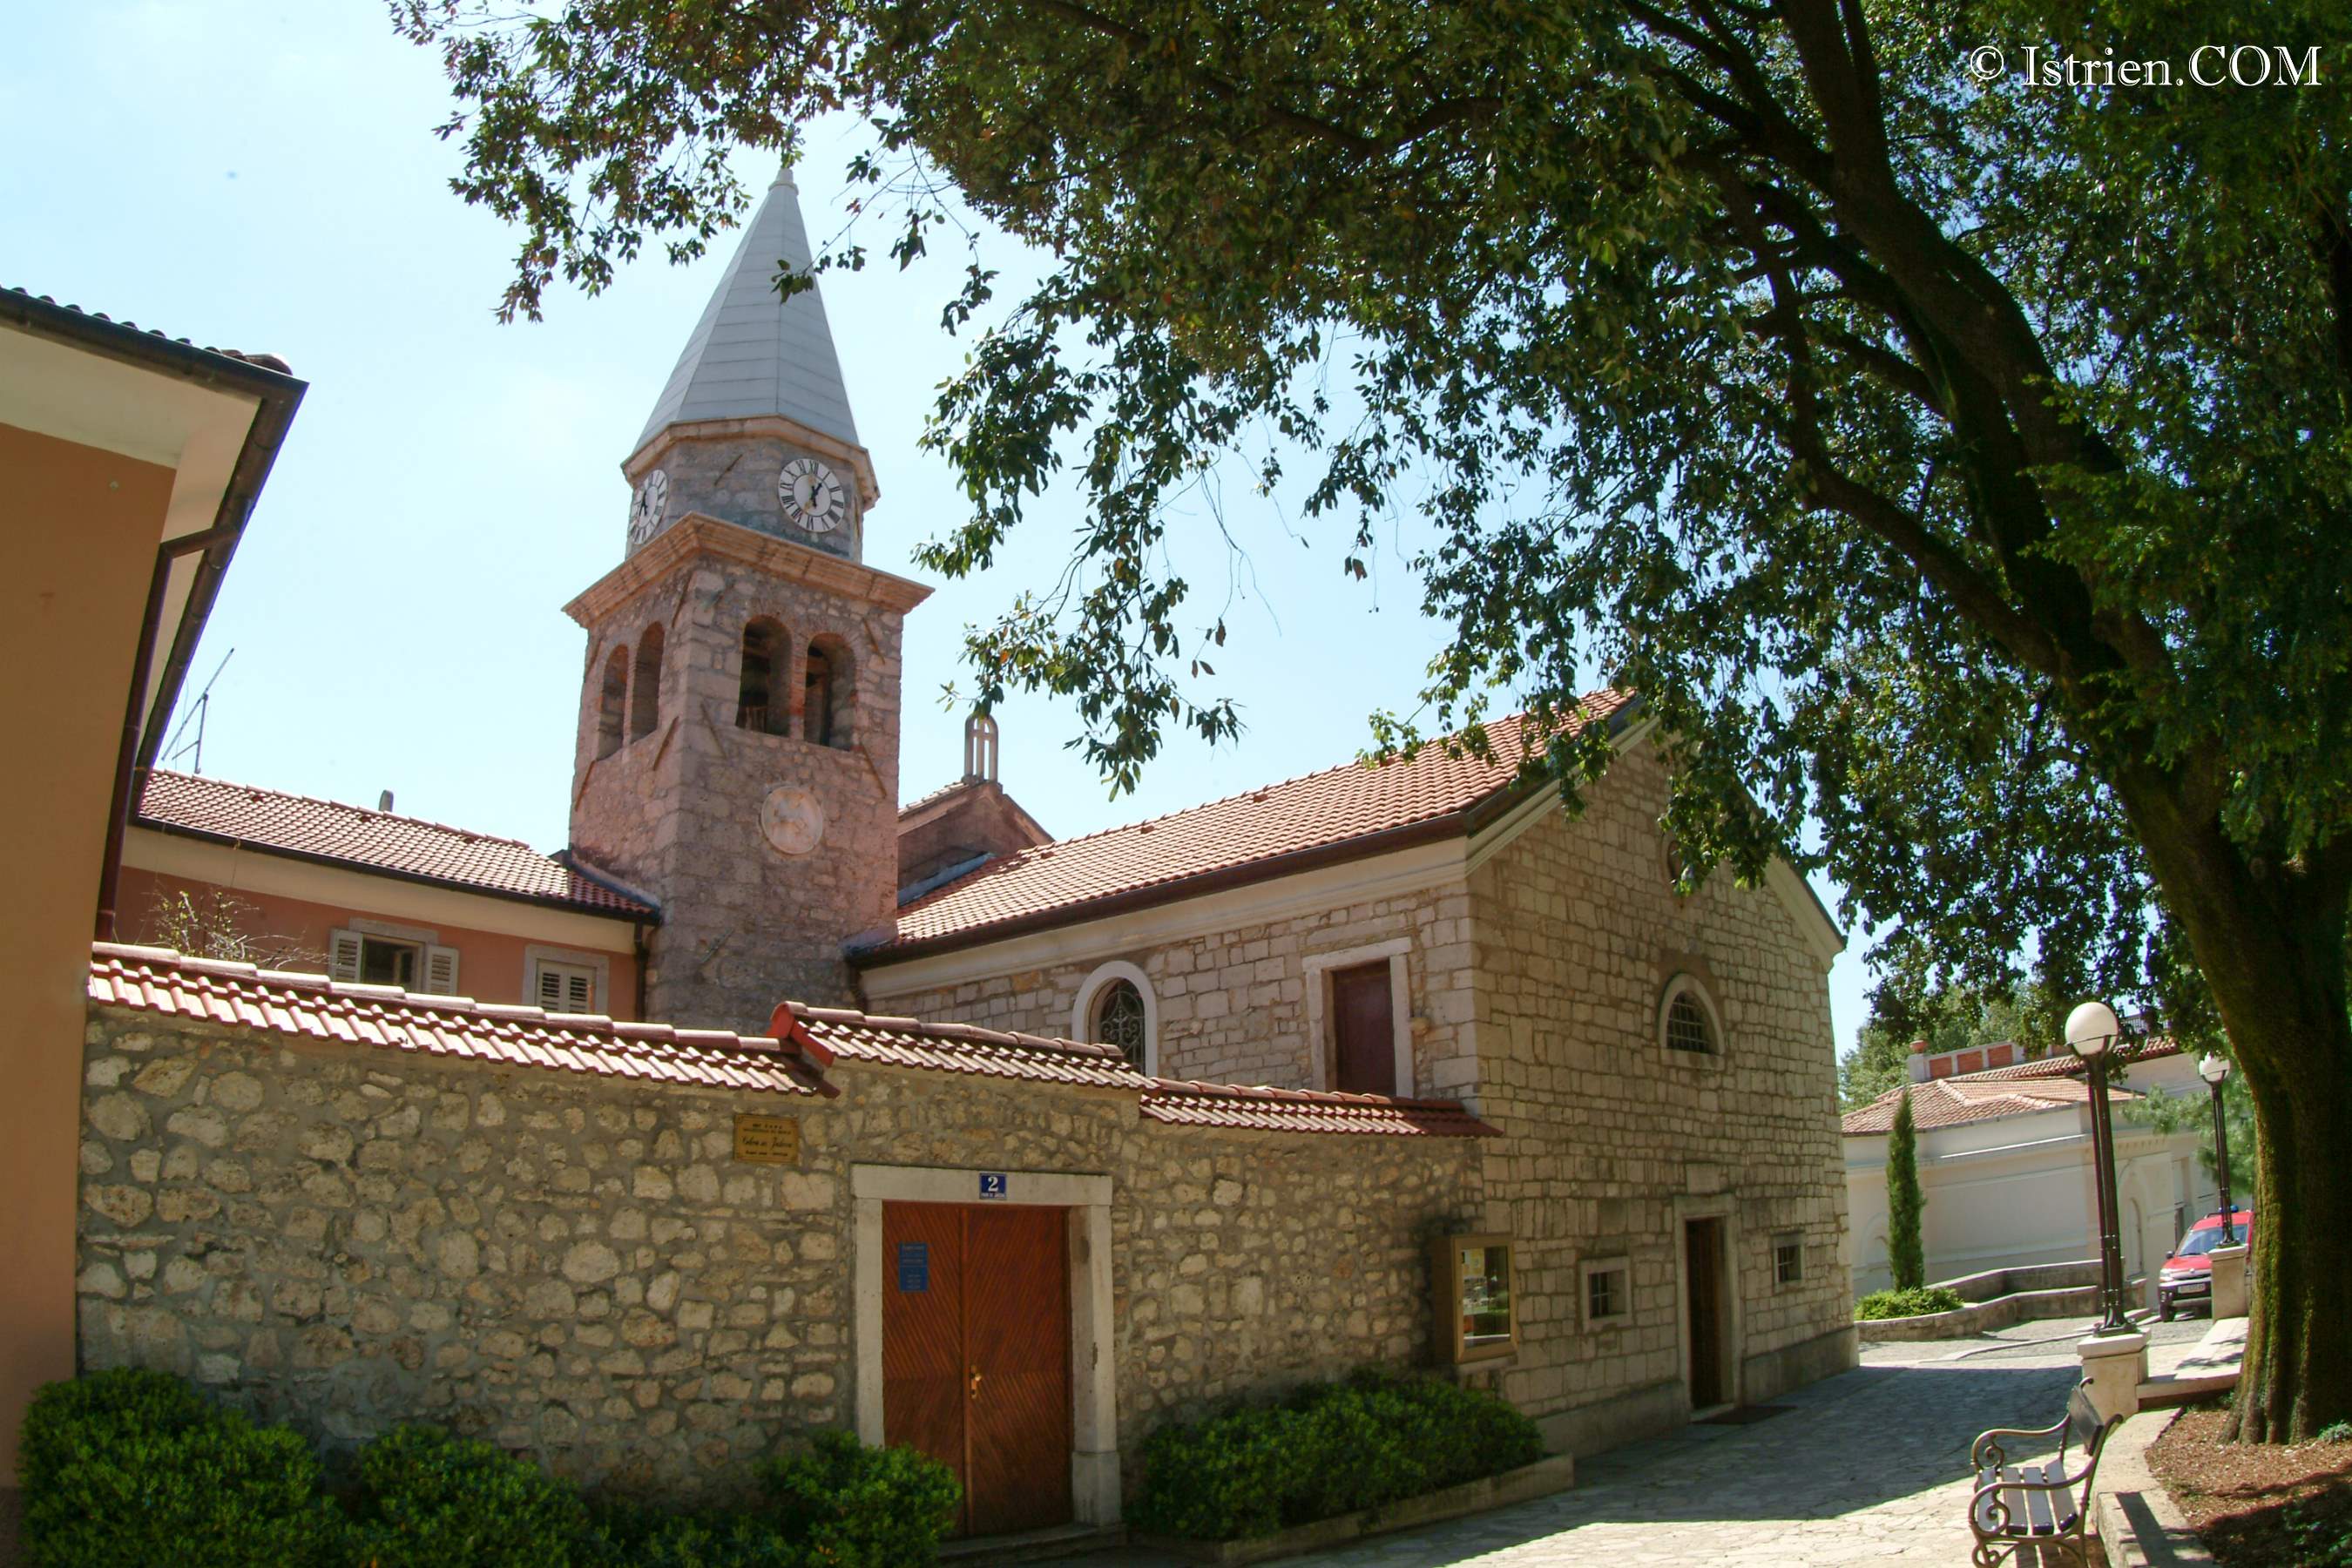 Aussenansicht der kleinen Kirche in Opatija